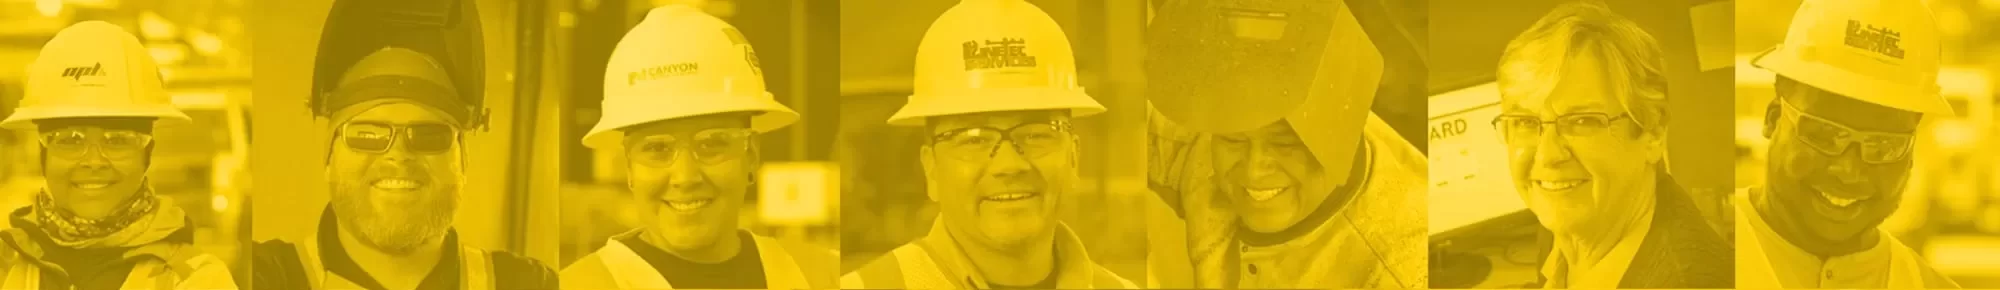 Smiling employees, yellow overlay image